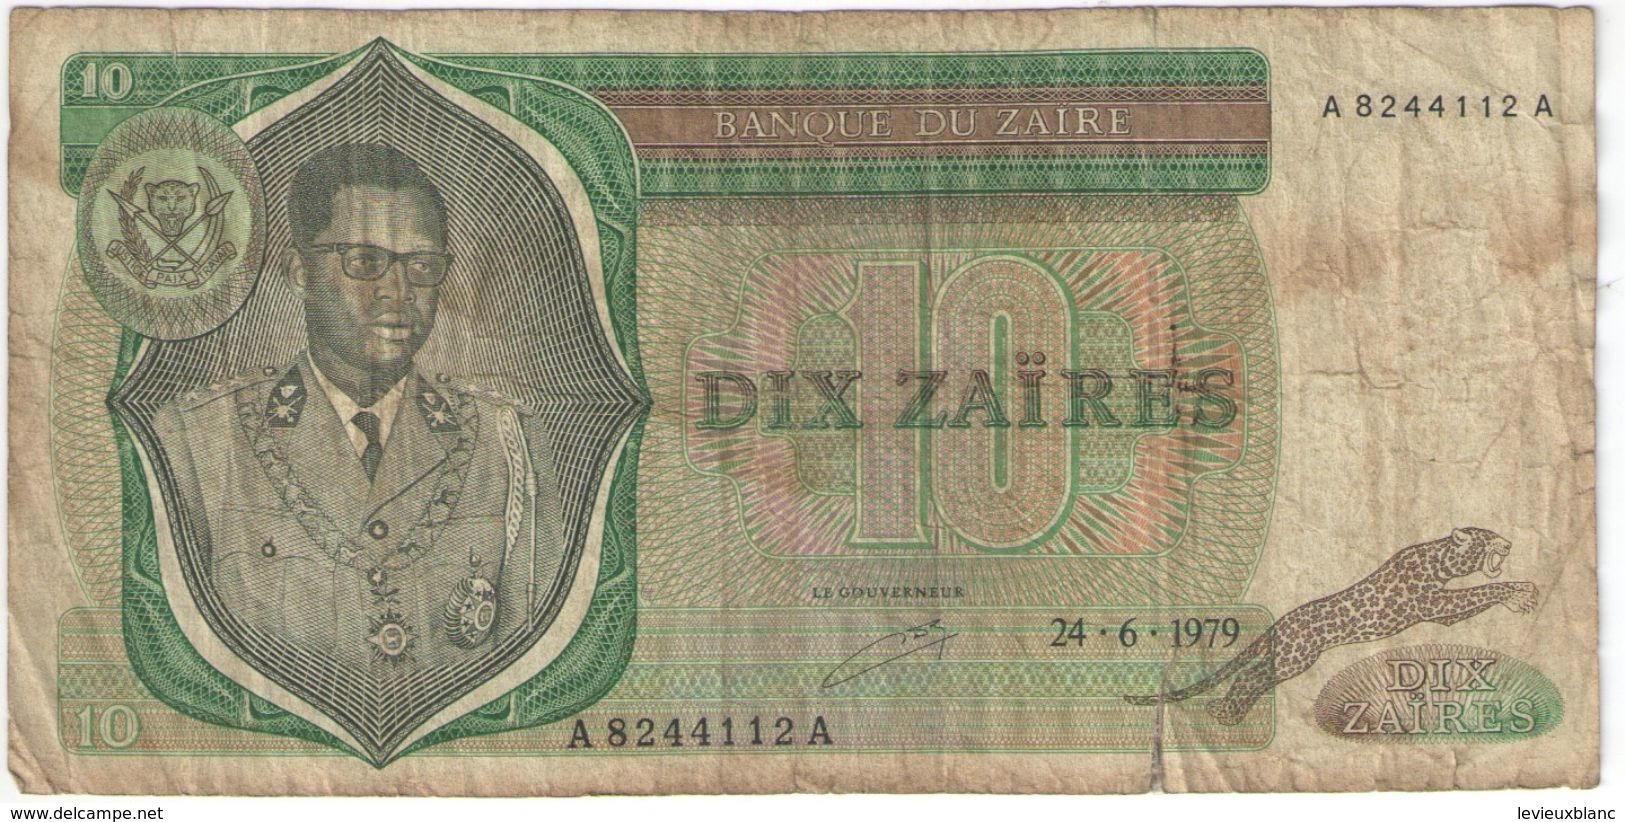 Dix Zaïres/Banque Du Zaïre/ /1979                BILL190 - Zaire